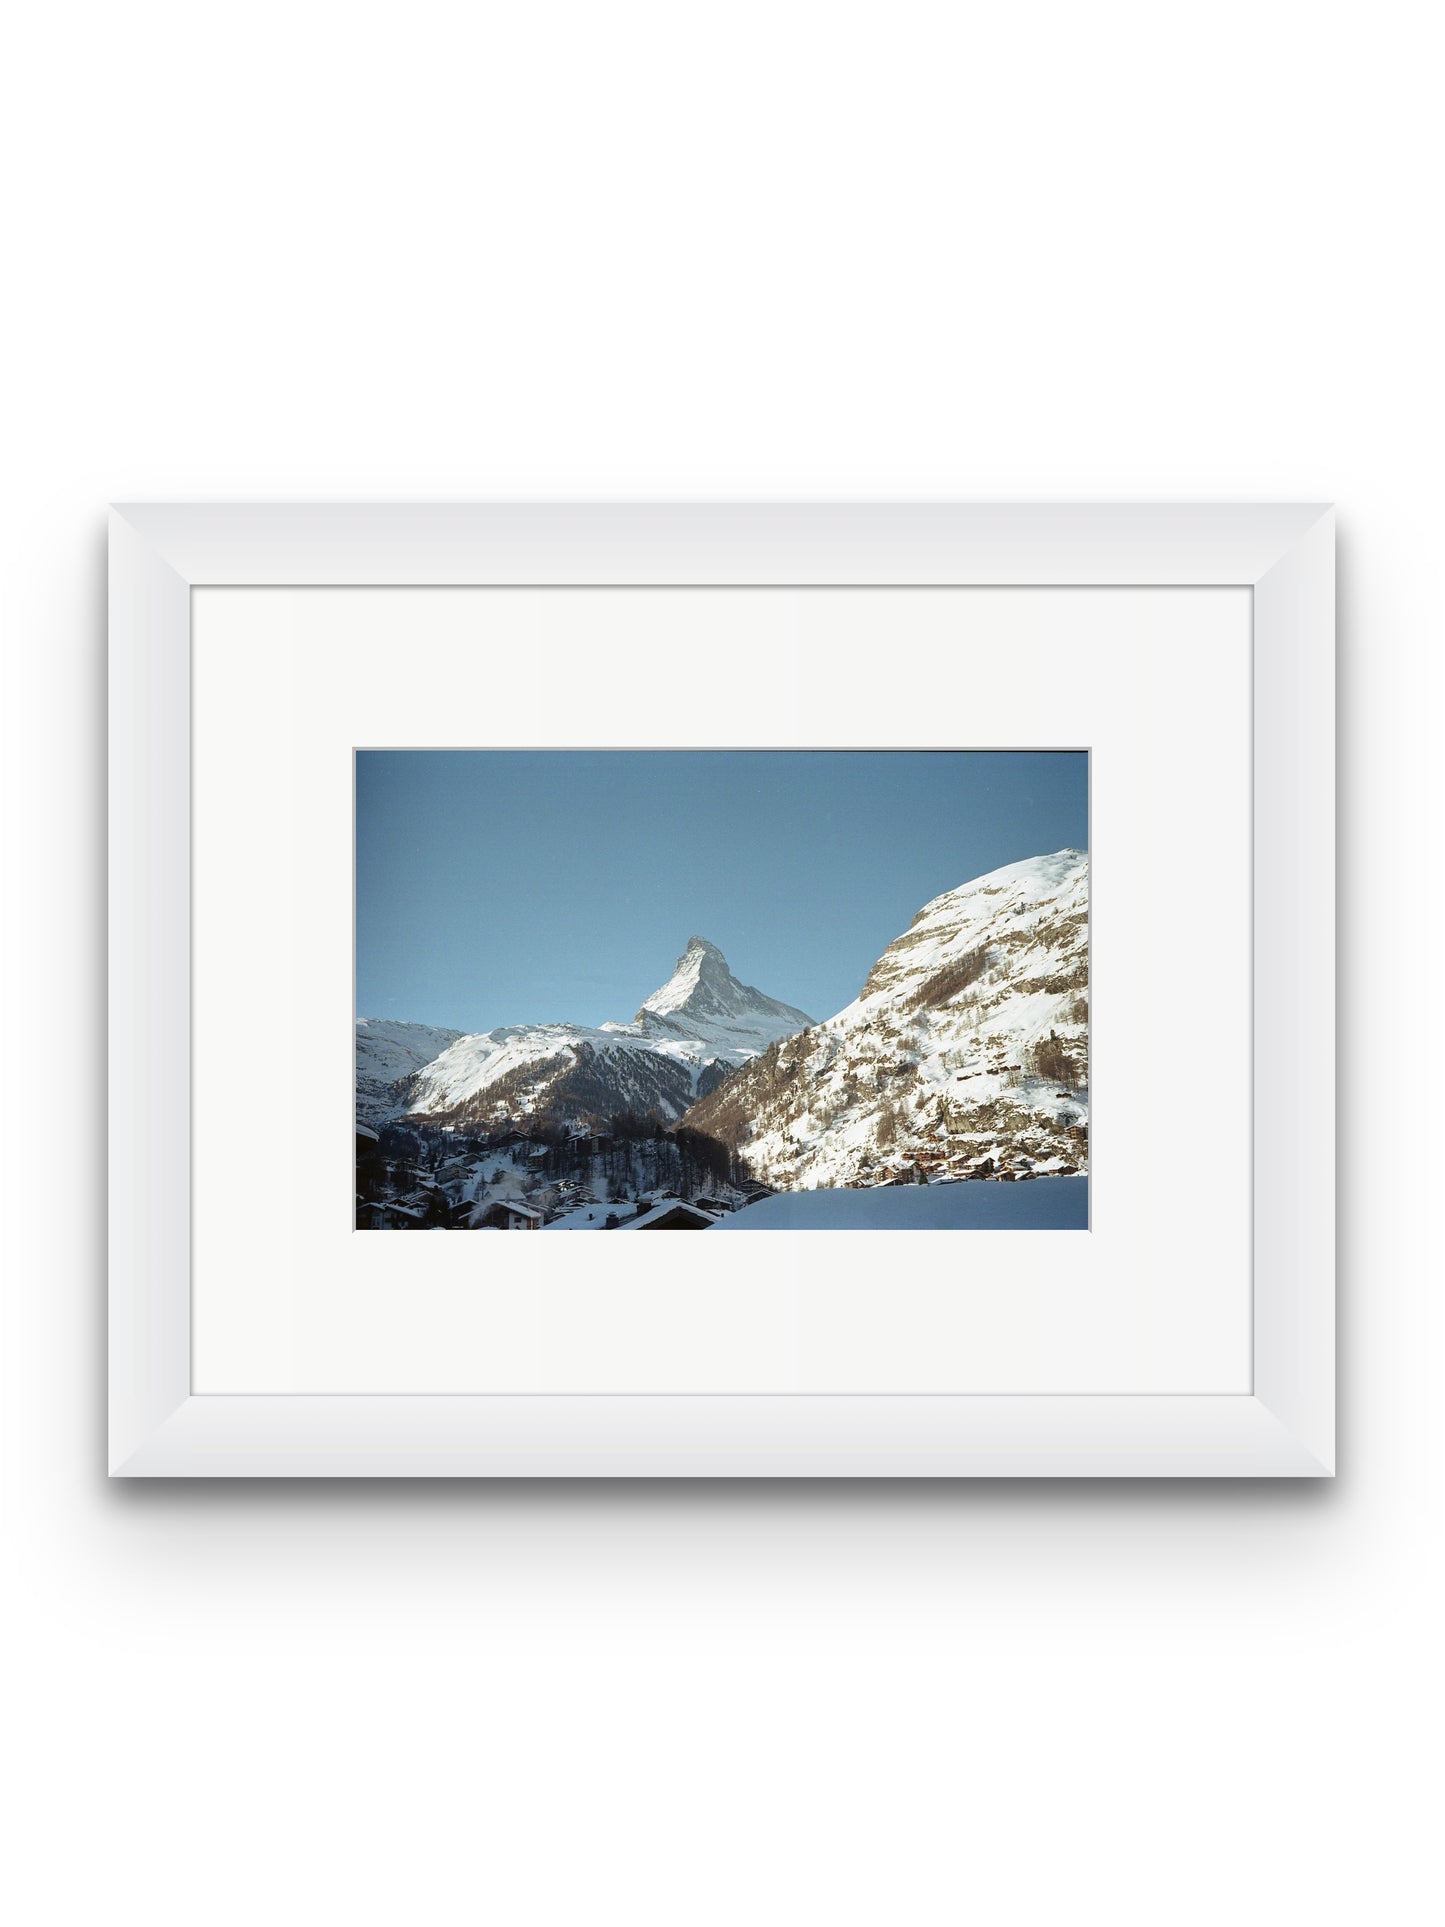 Sleeping Under the Matterhorn